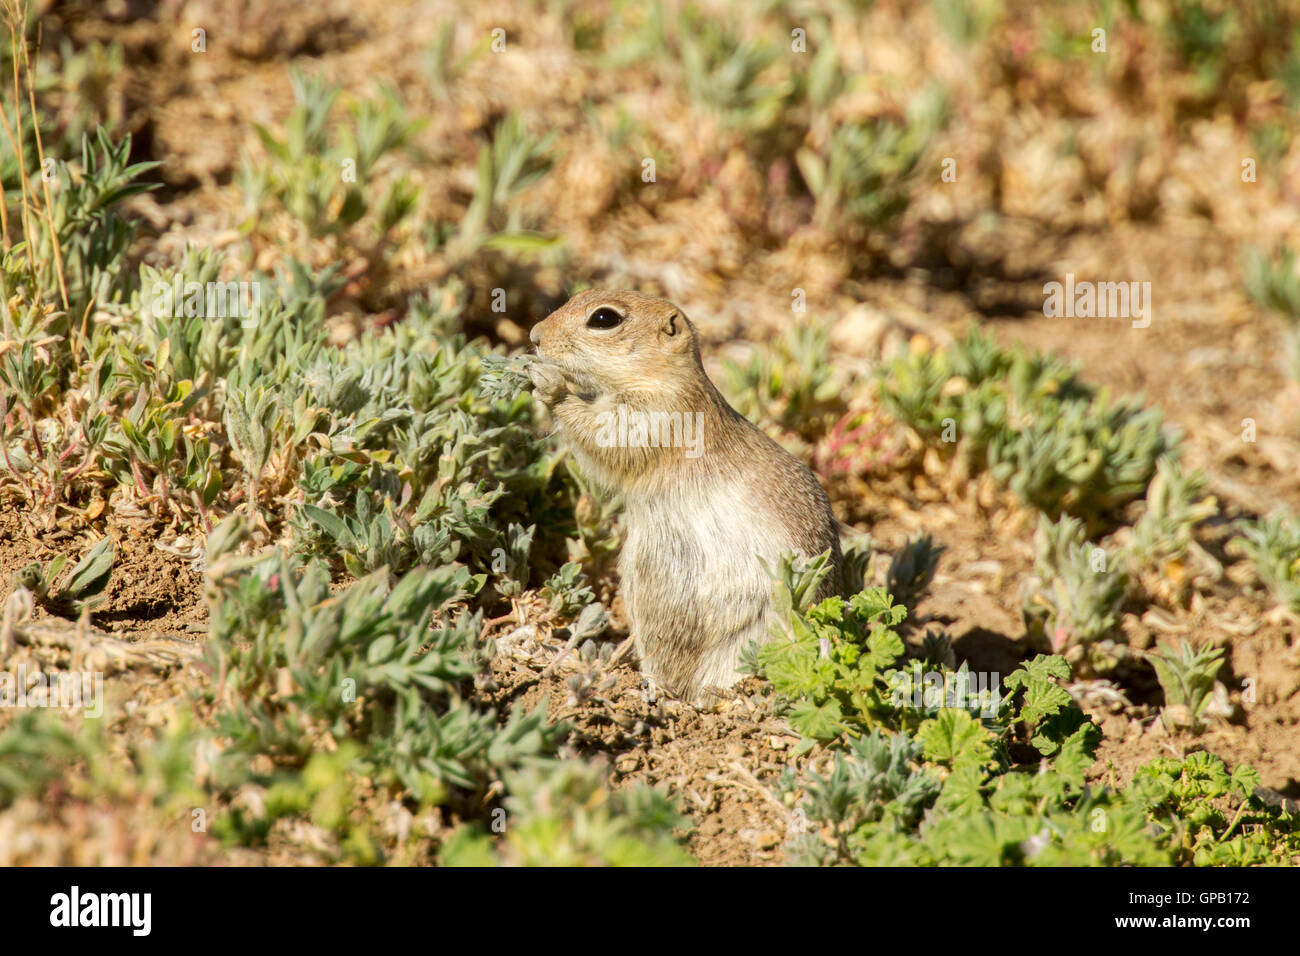 Massa Piute Urocitellus scoiattolo mollis 30 miglia a sud di castoro, Utah, Stati Uniti 5 luglio 2016 adulto mangiare. Roden Foto Stock